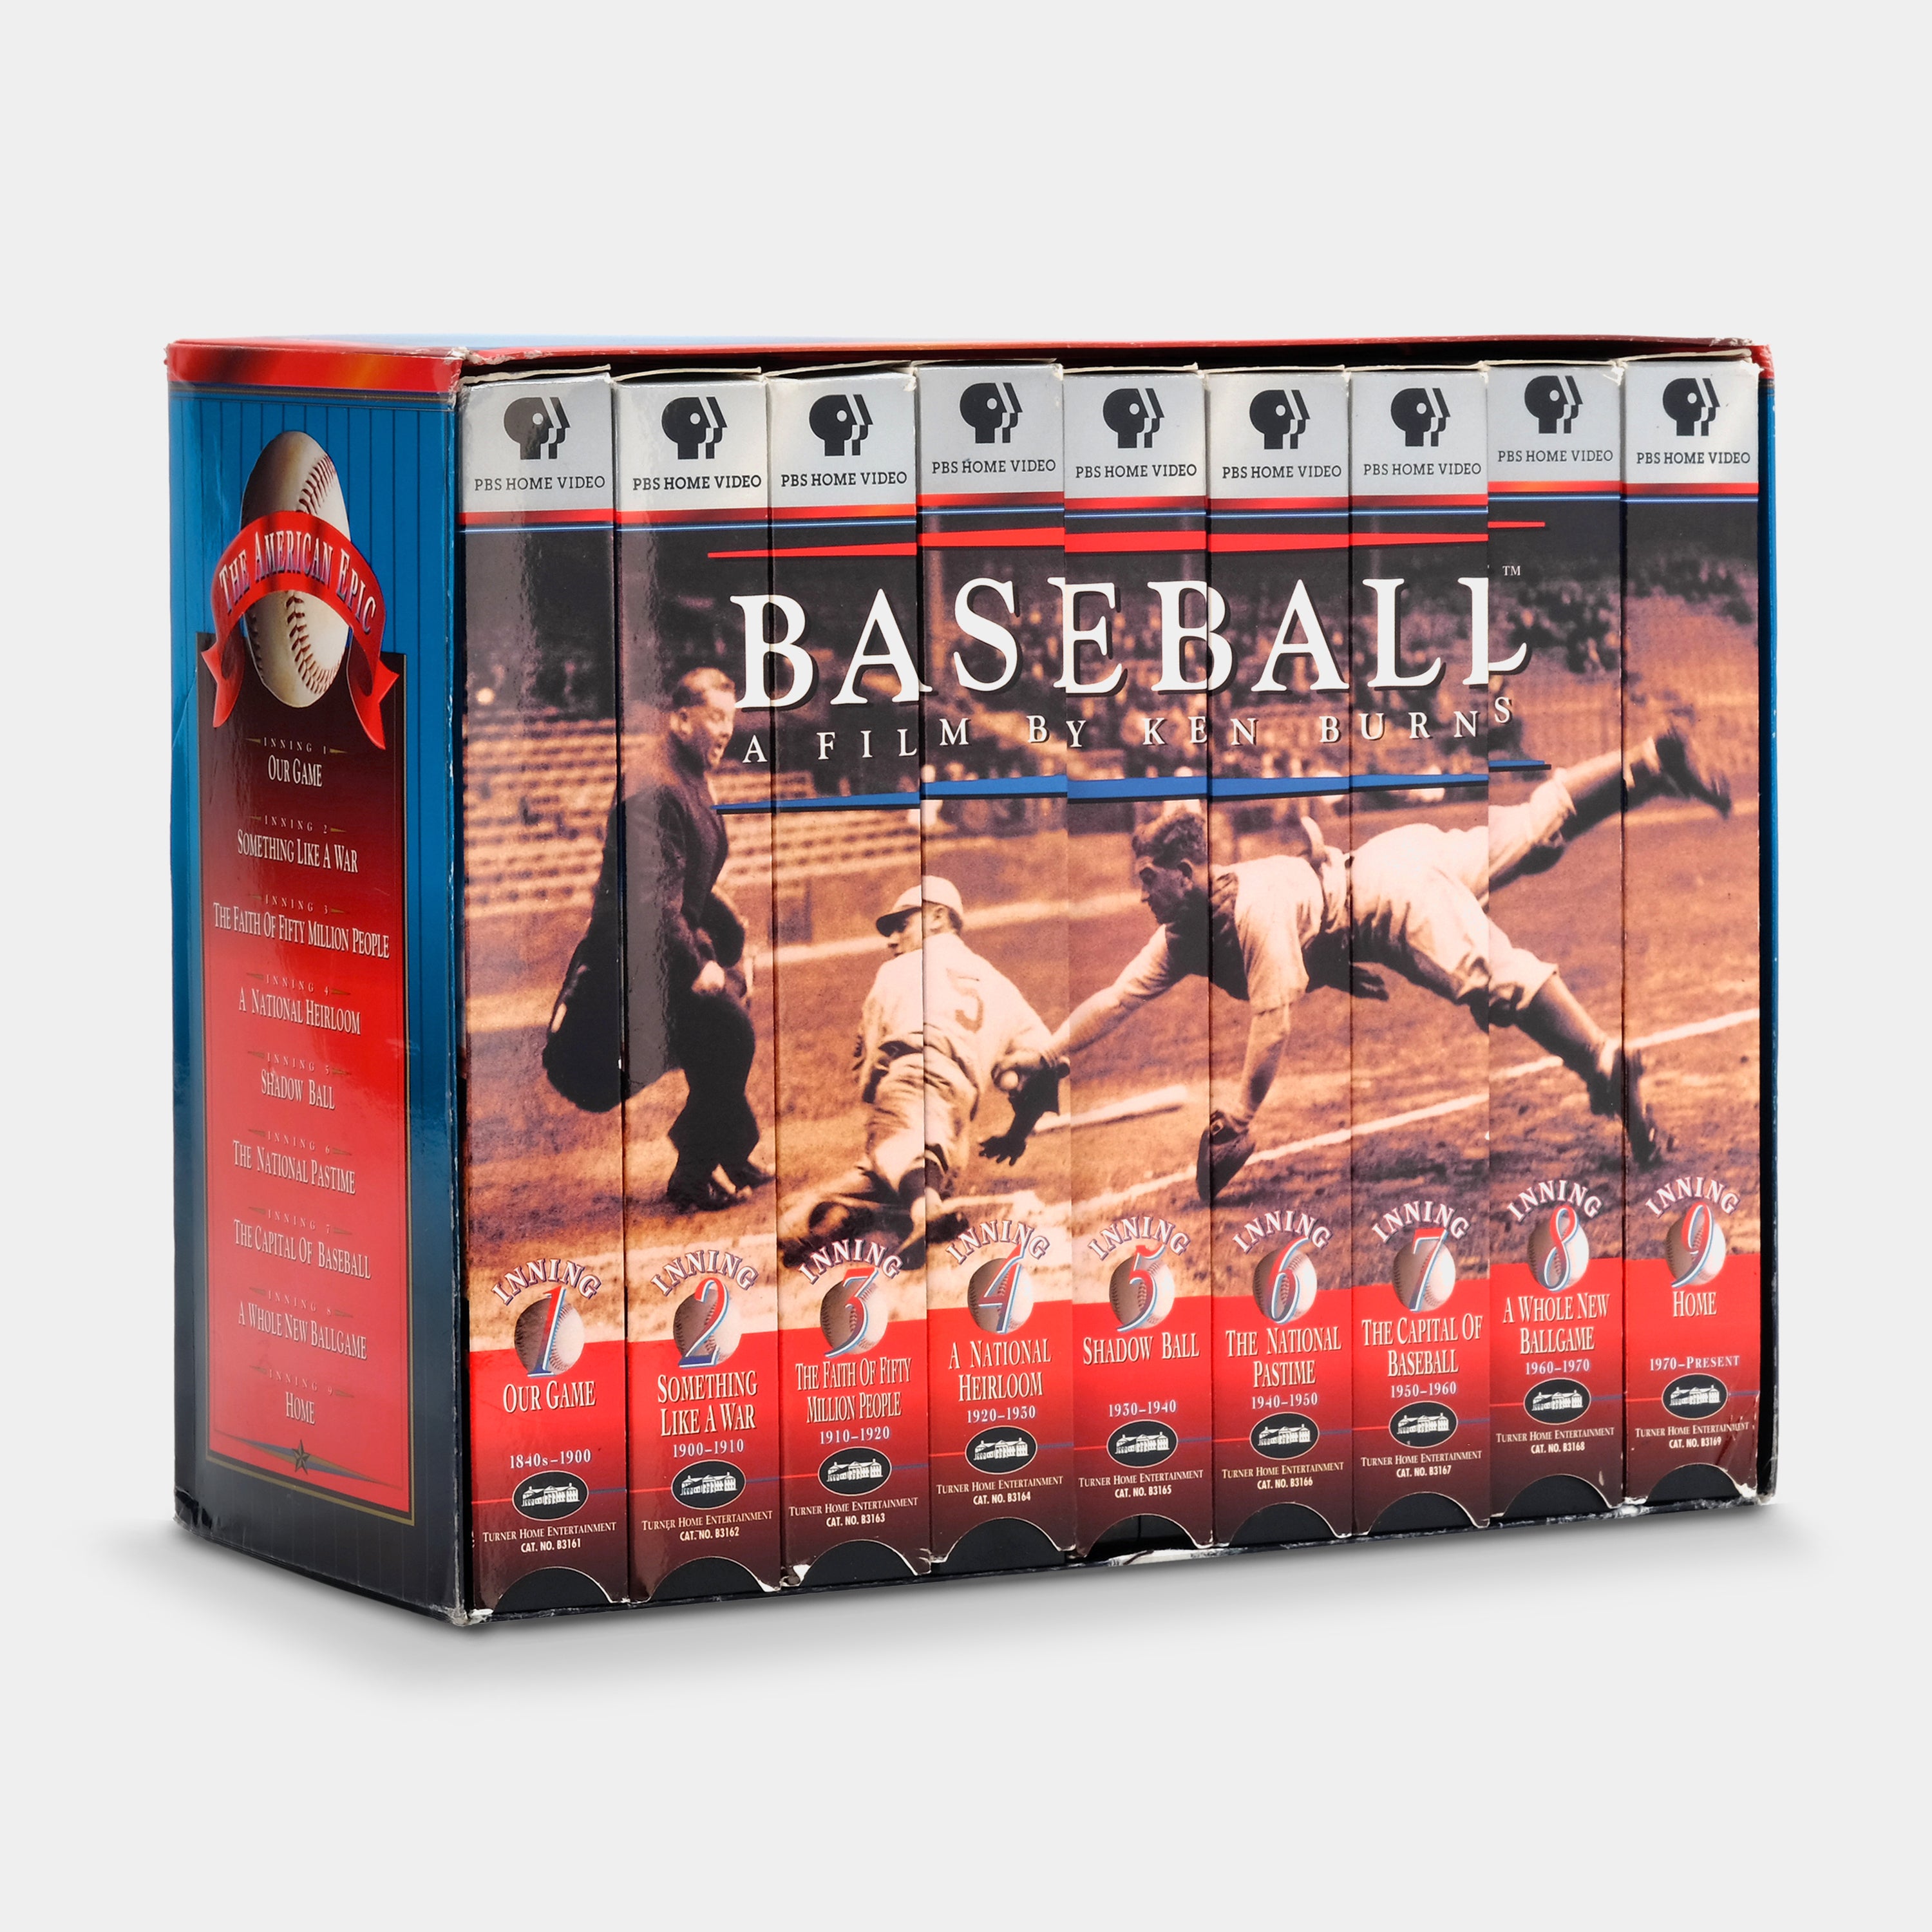 Baseball: A Film By Ken Burns 9-VHS Tape Set